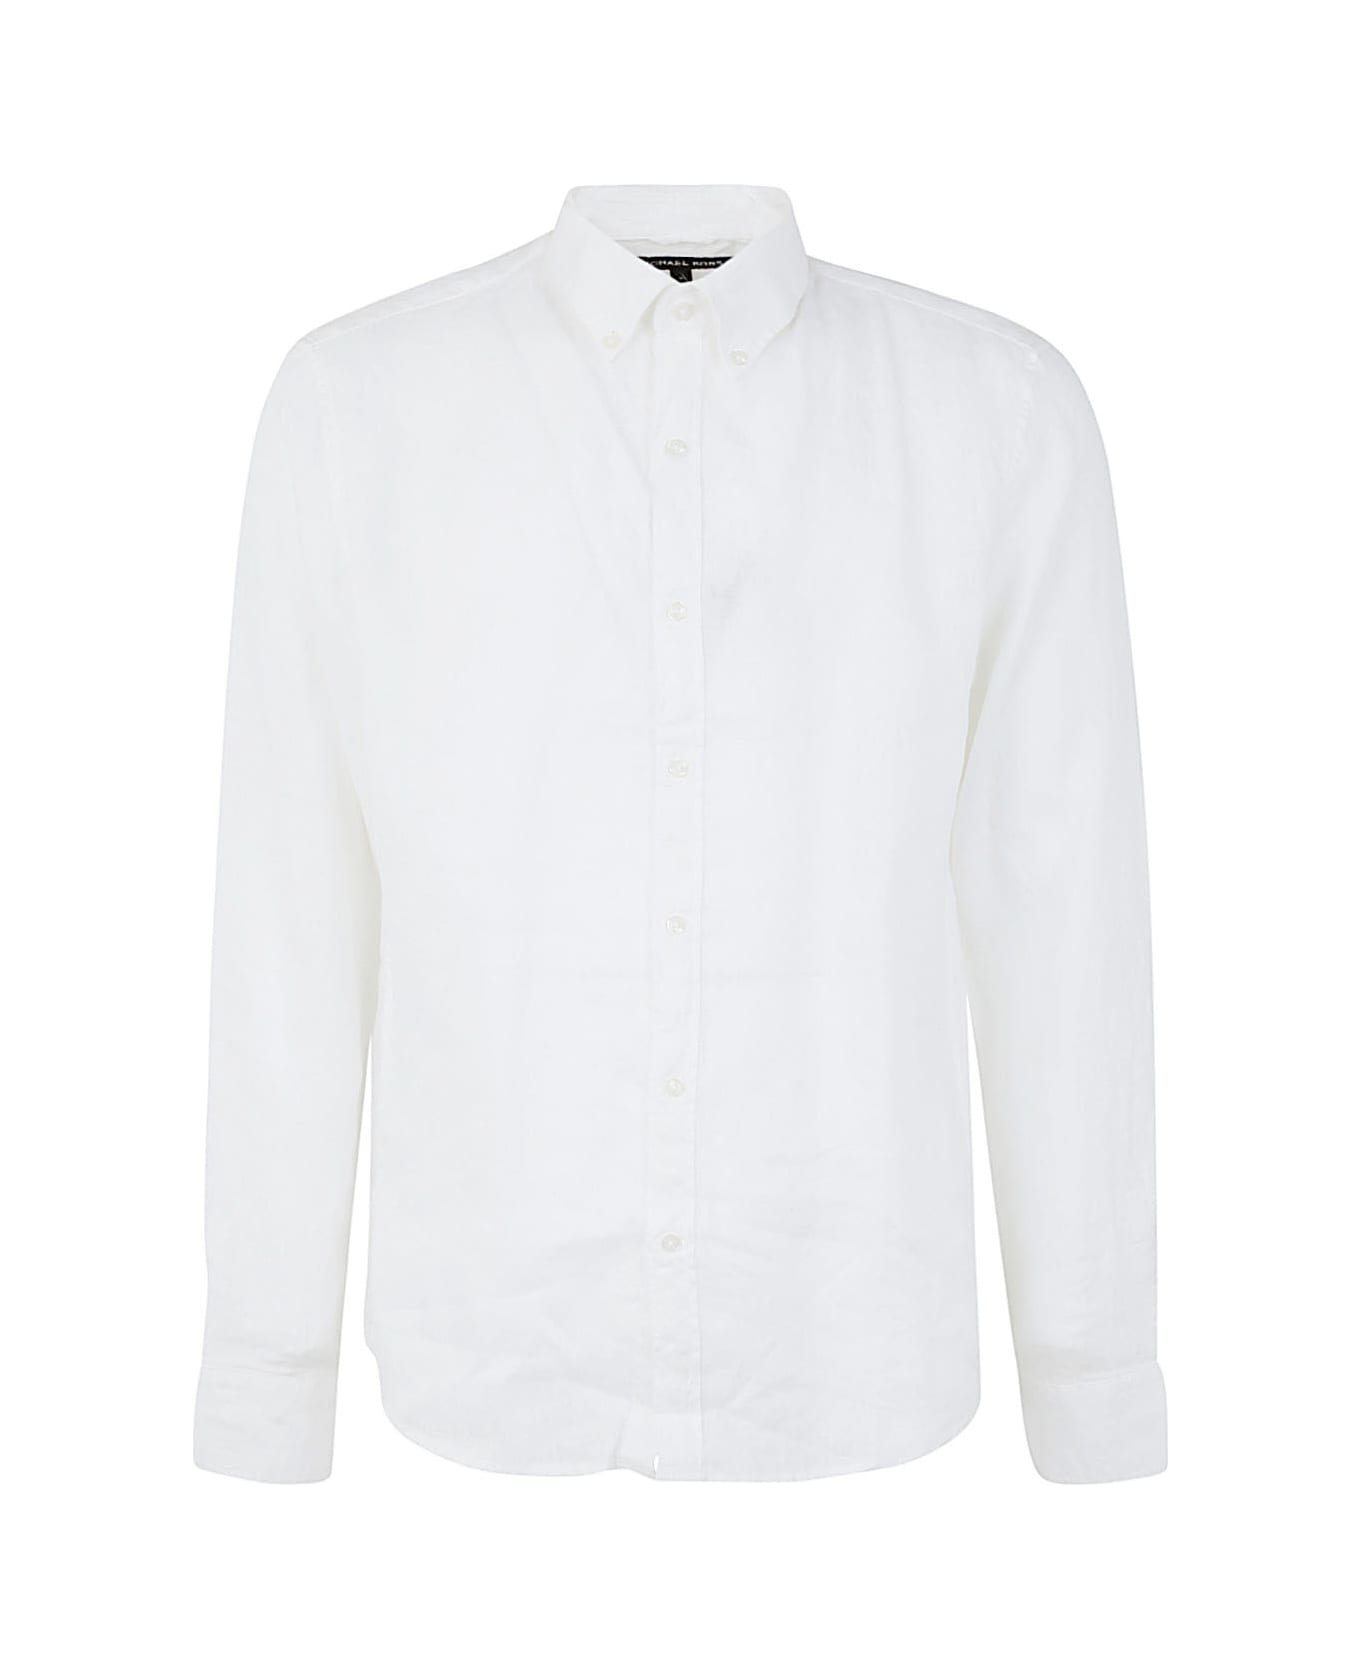 Michael Kors Long Sleeved Linen Shirt - White